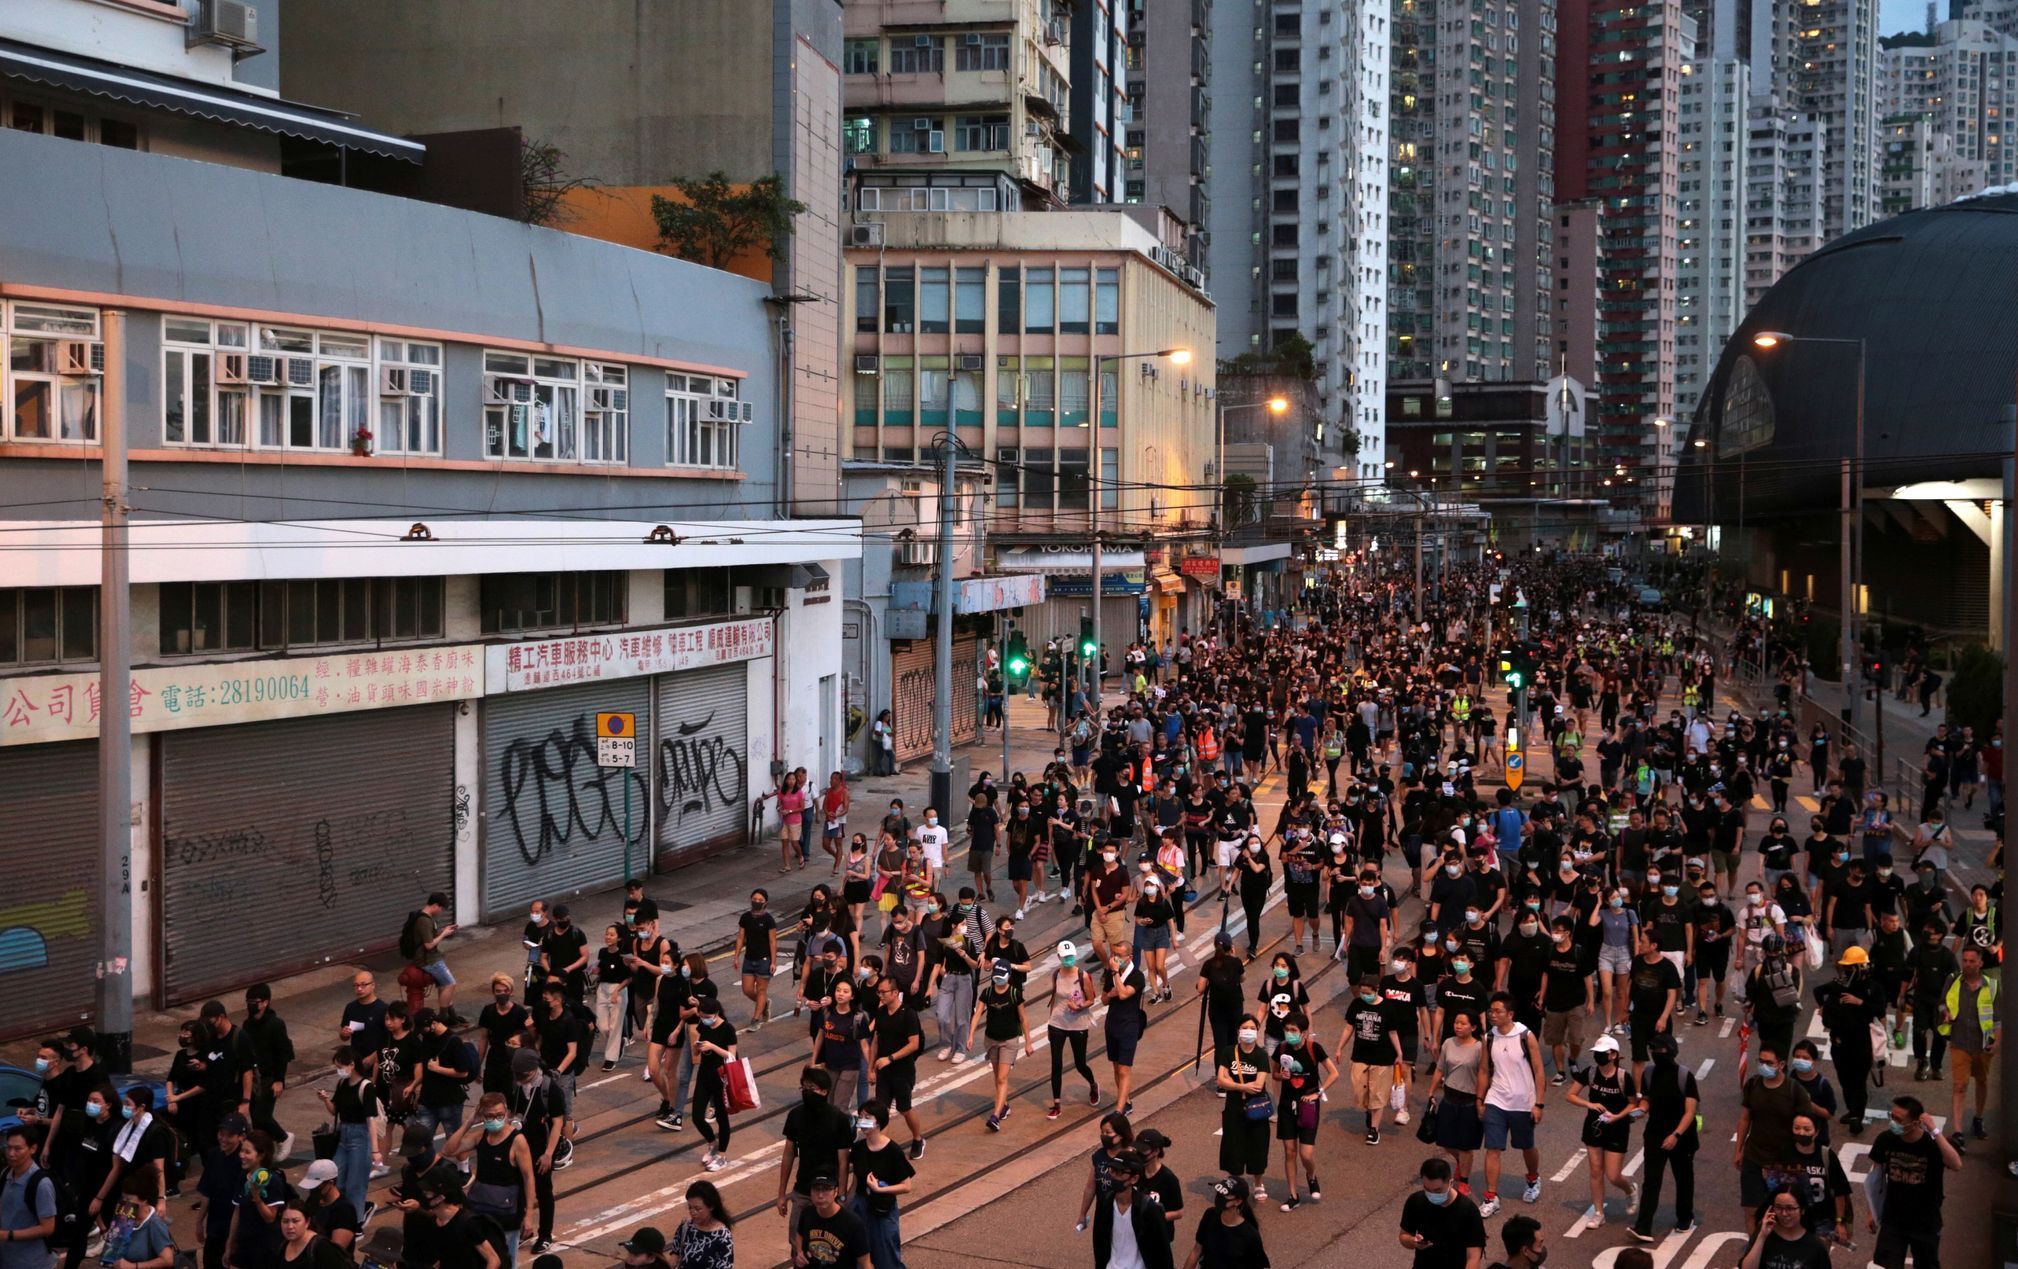 Protesty, Hongkong, 4. 8. 2019